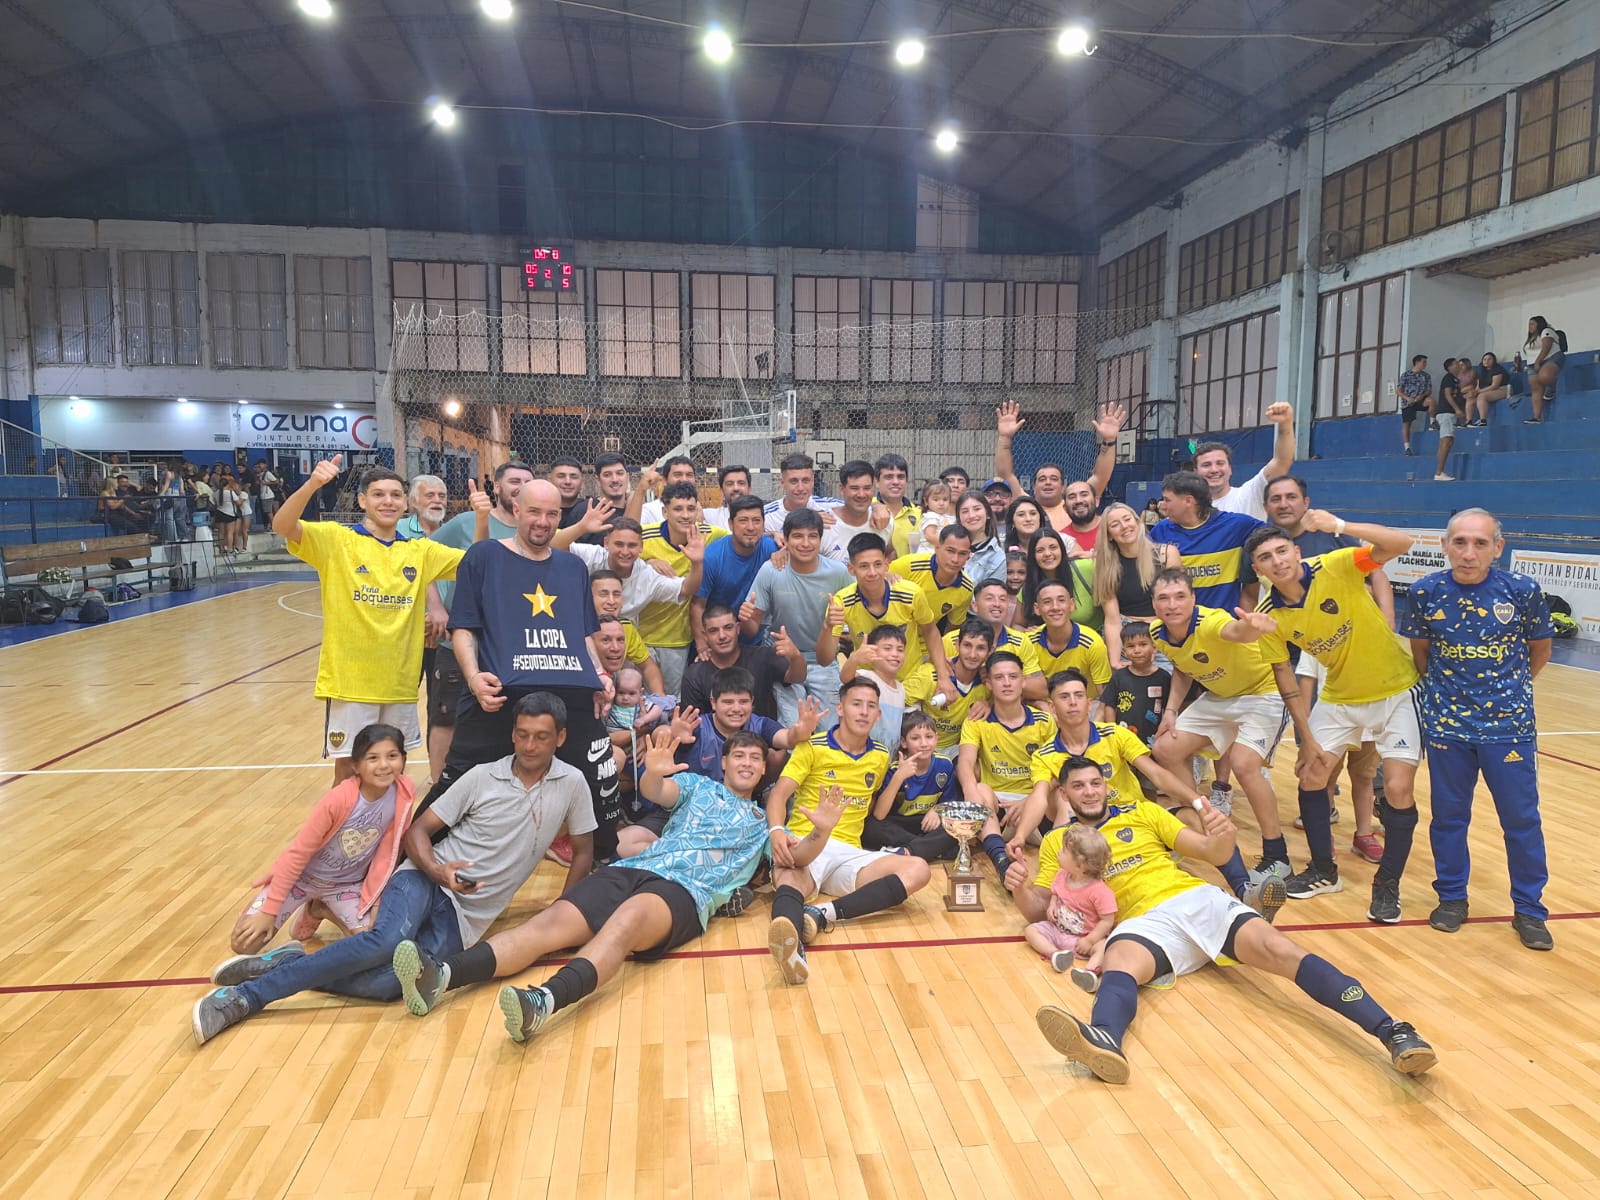 Asociación Boquenses es el nuevo Campeón del Futsal concordiense